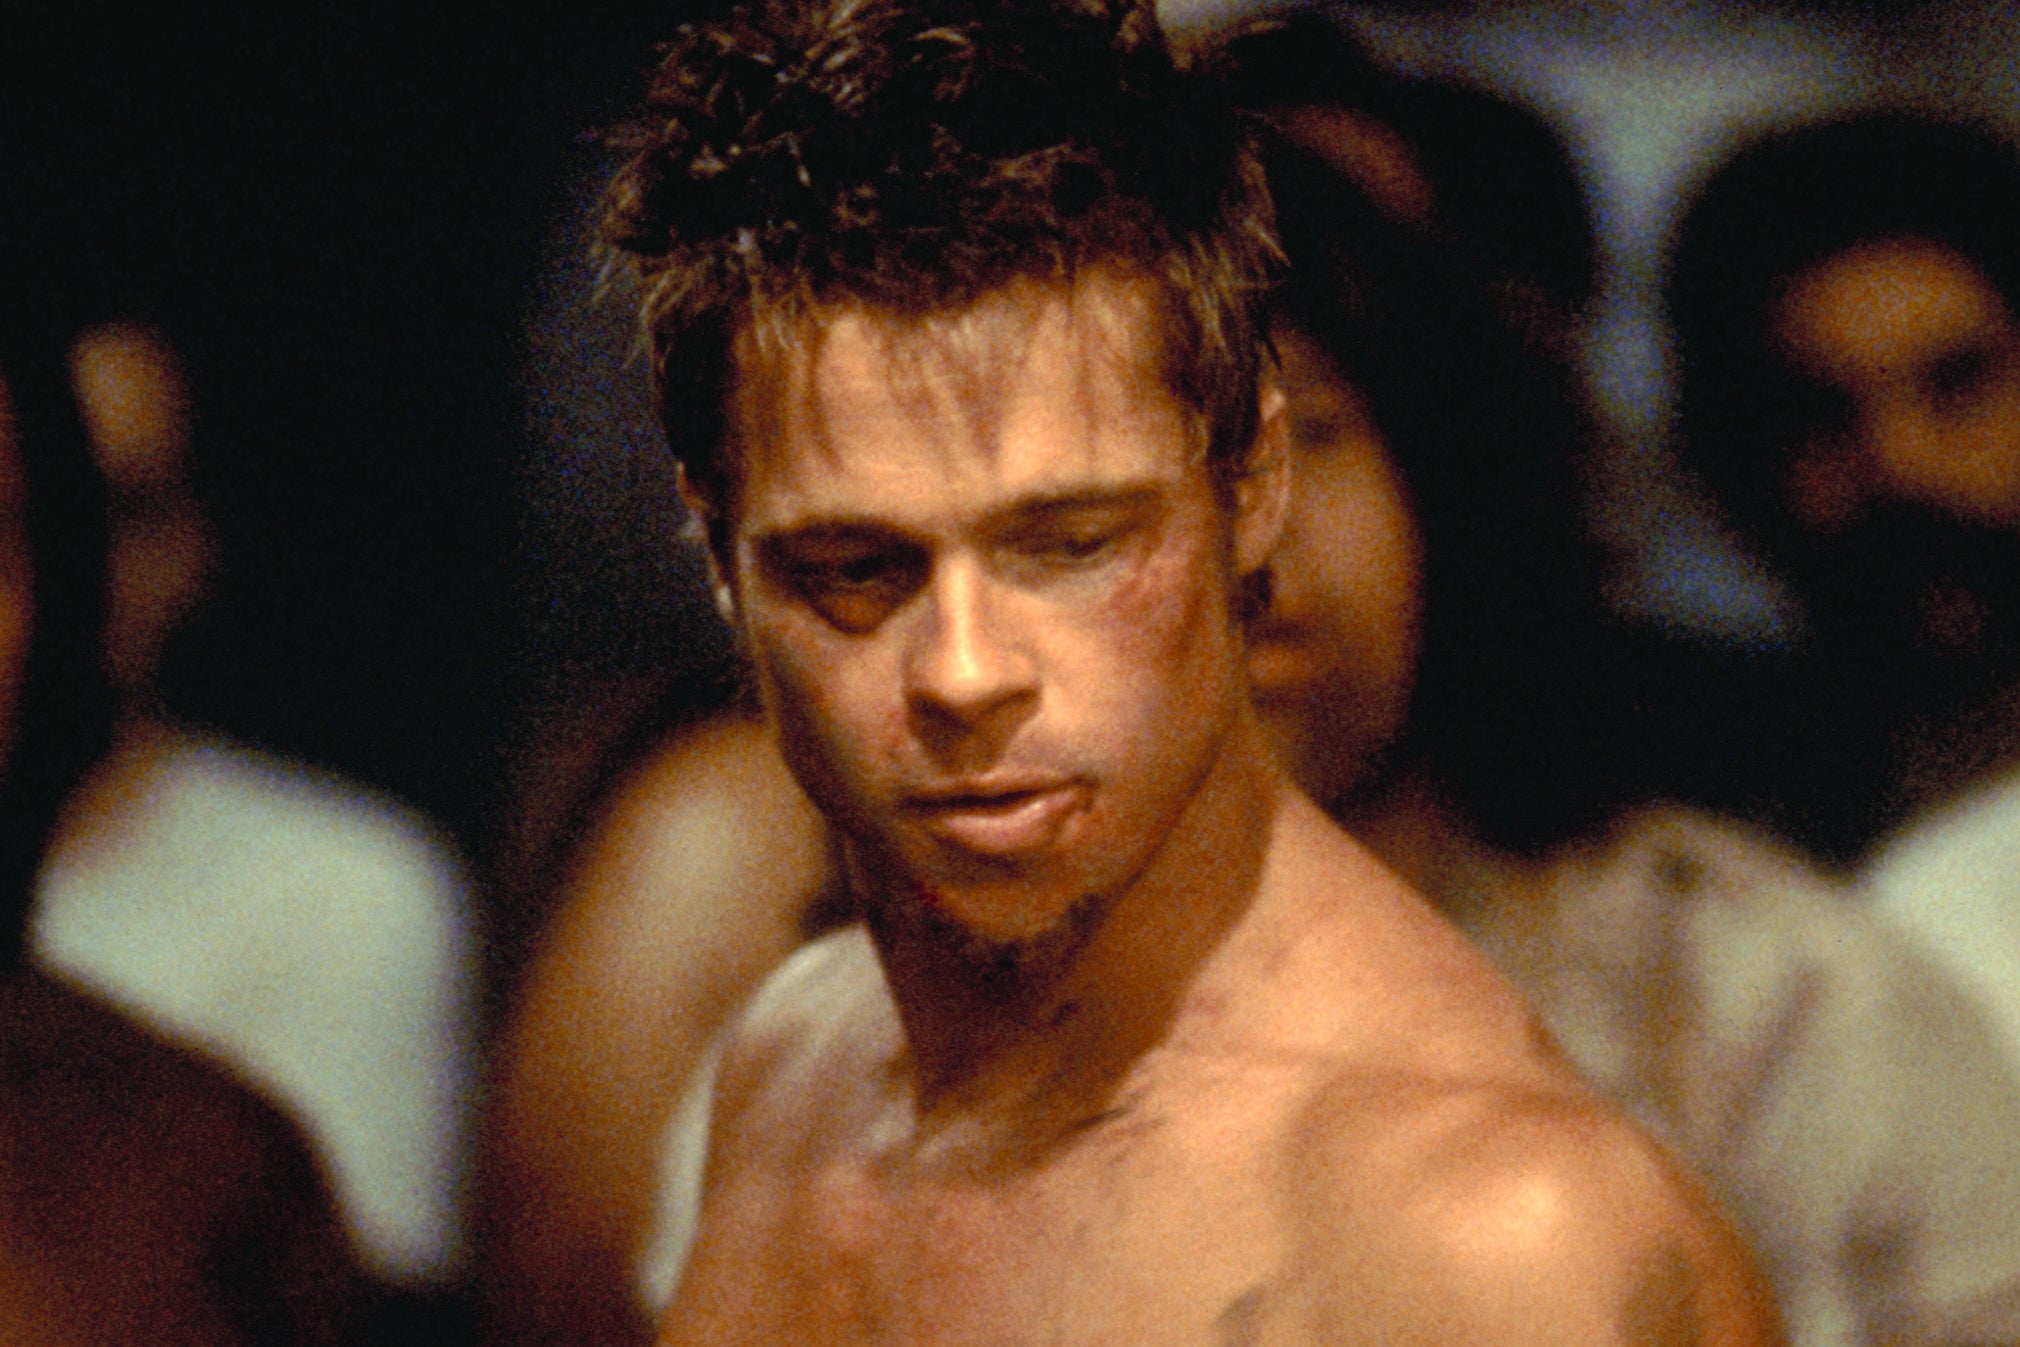 Brad Pitt in ‘Fight Club'